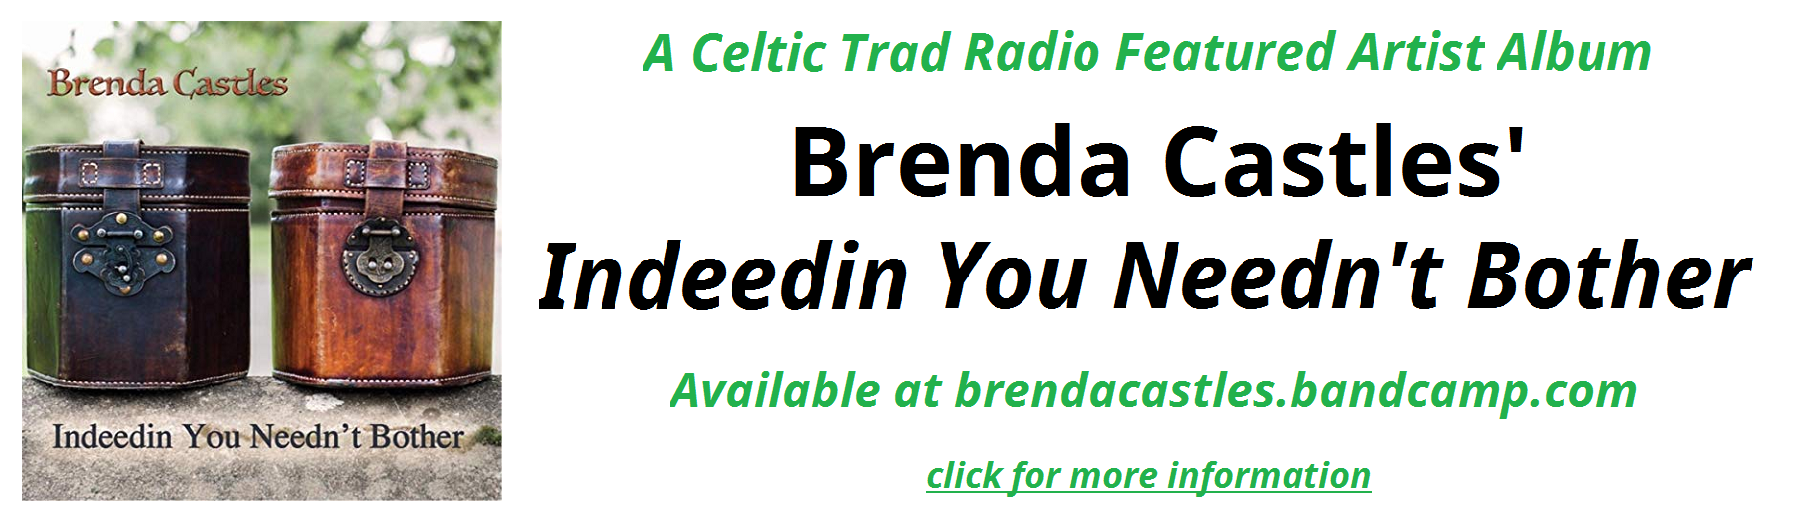 Brenda Castles ad